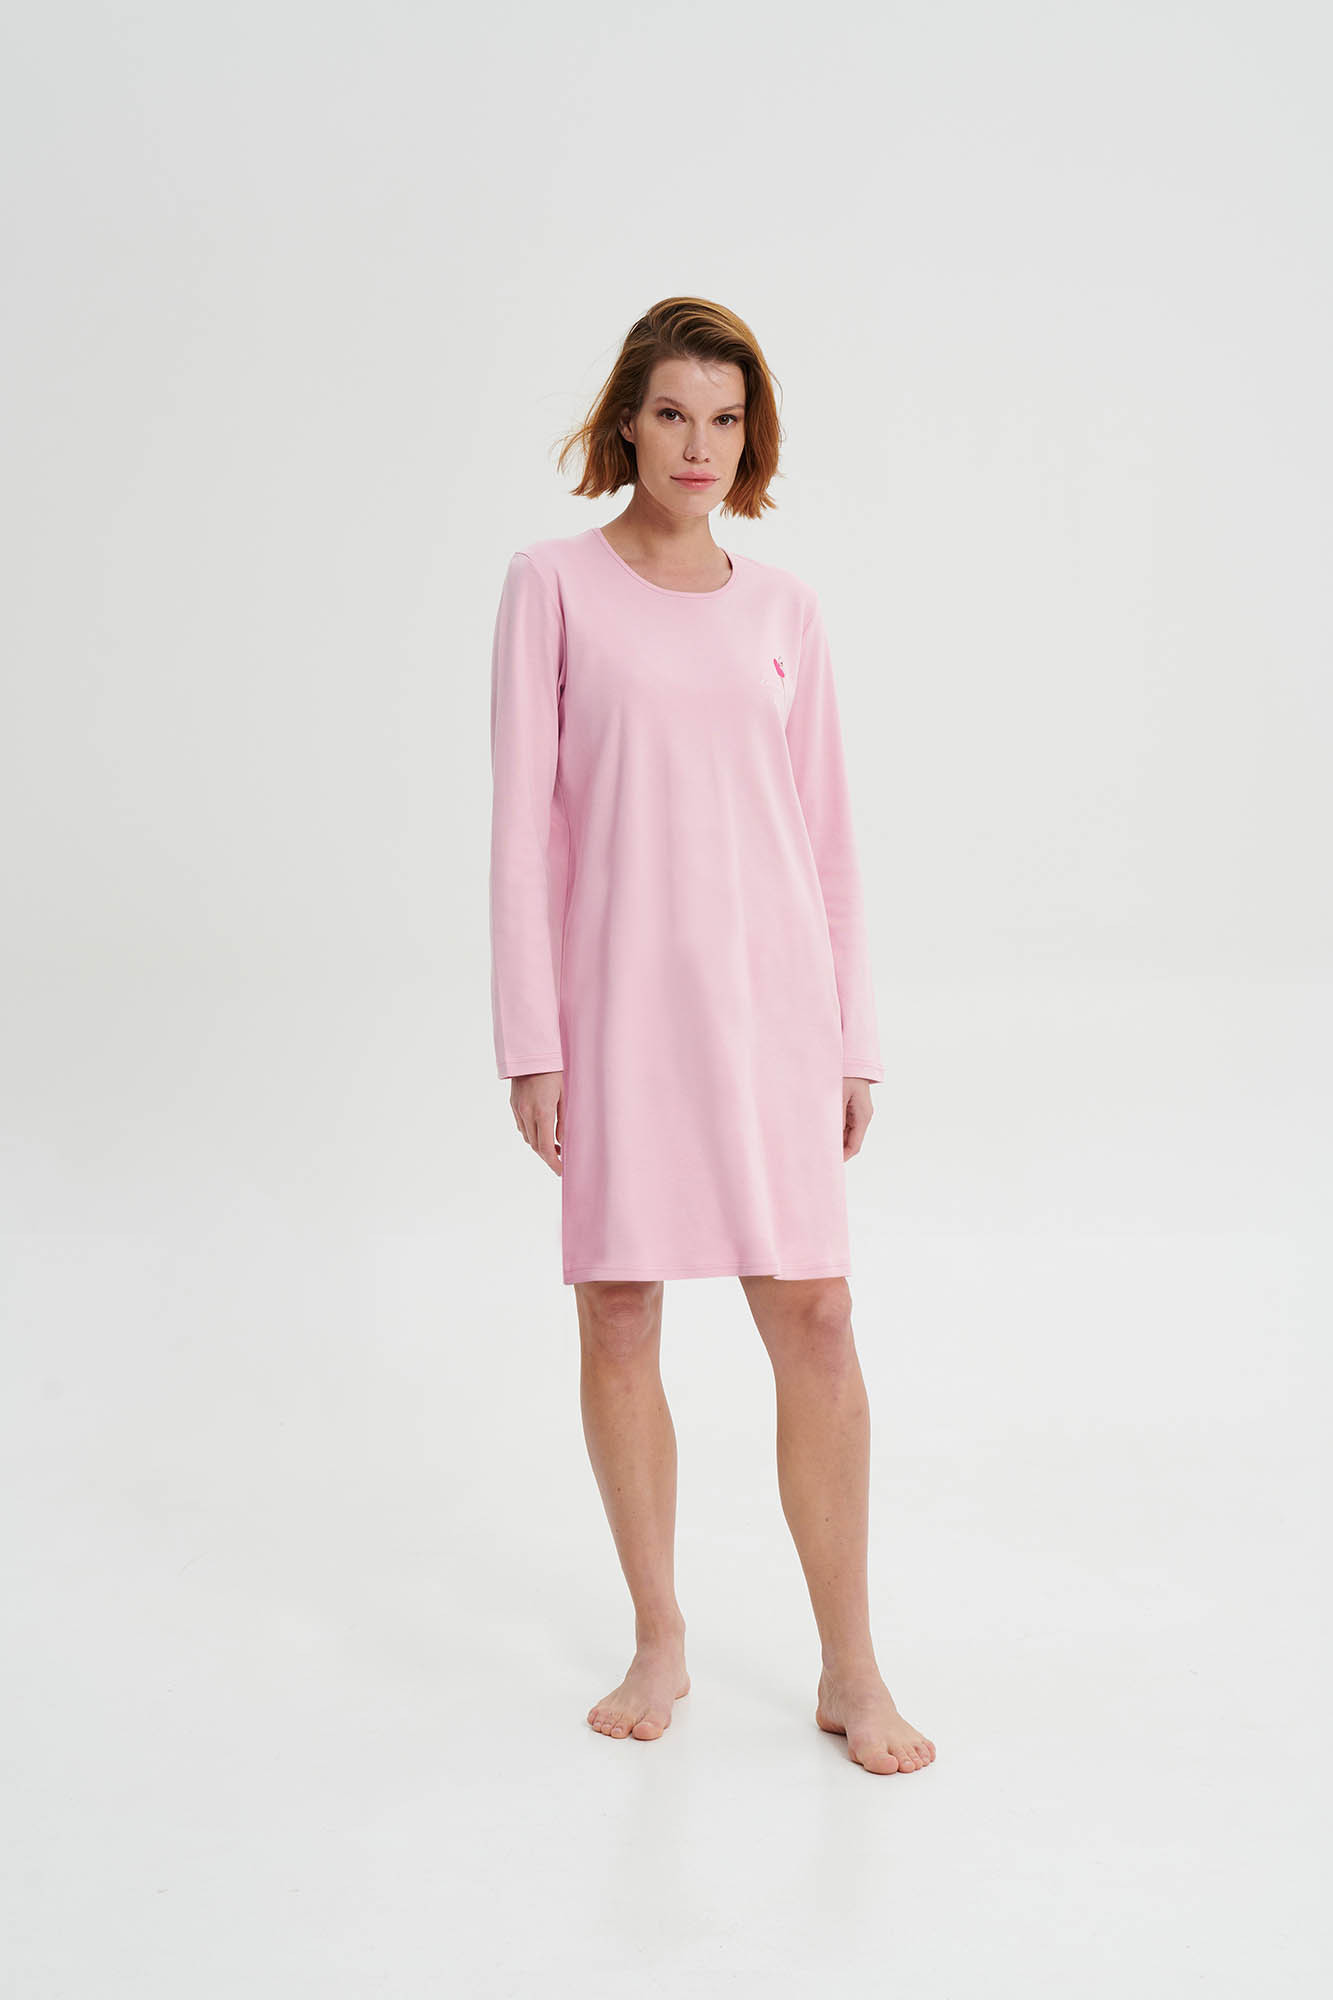 Vamp - Noční košile s dlouhým rukávem 19456 - Vamp pink nectar XL